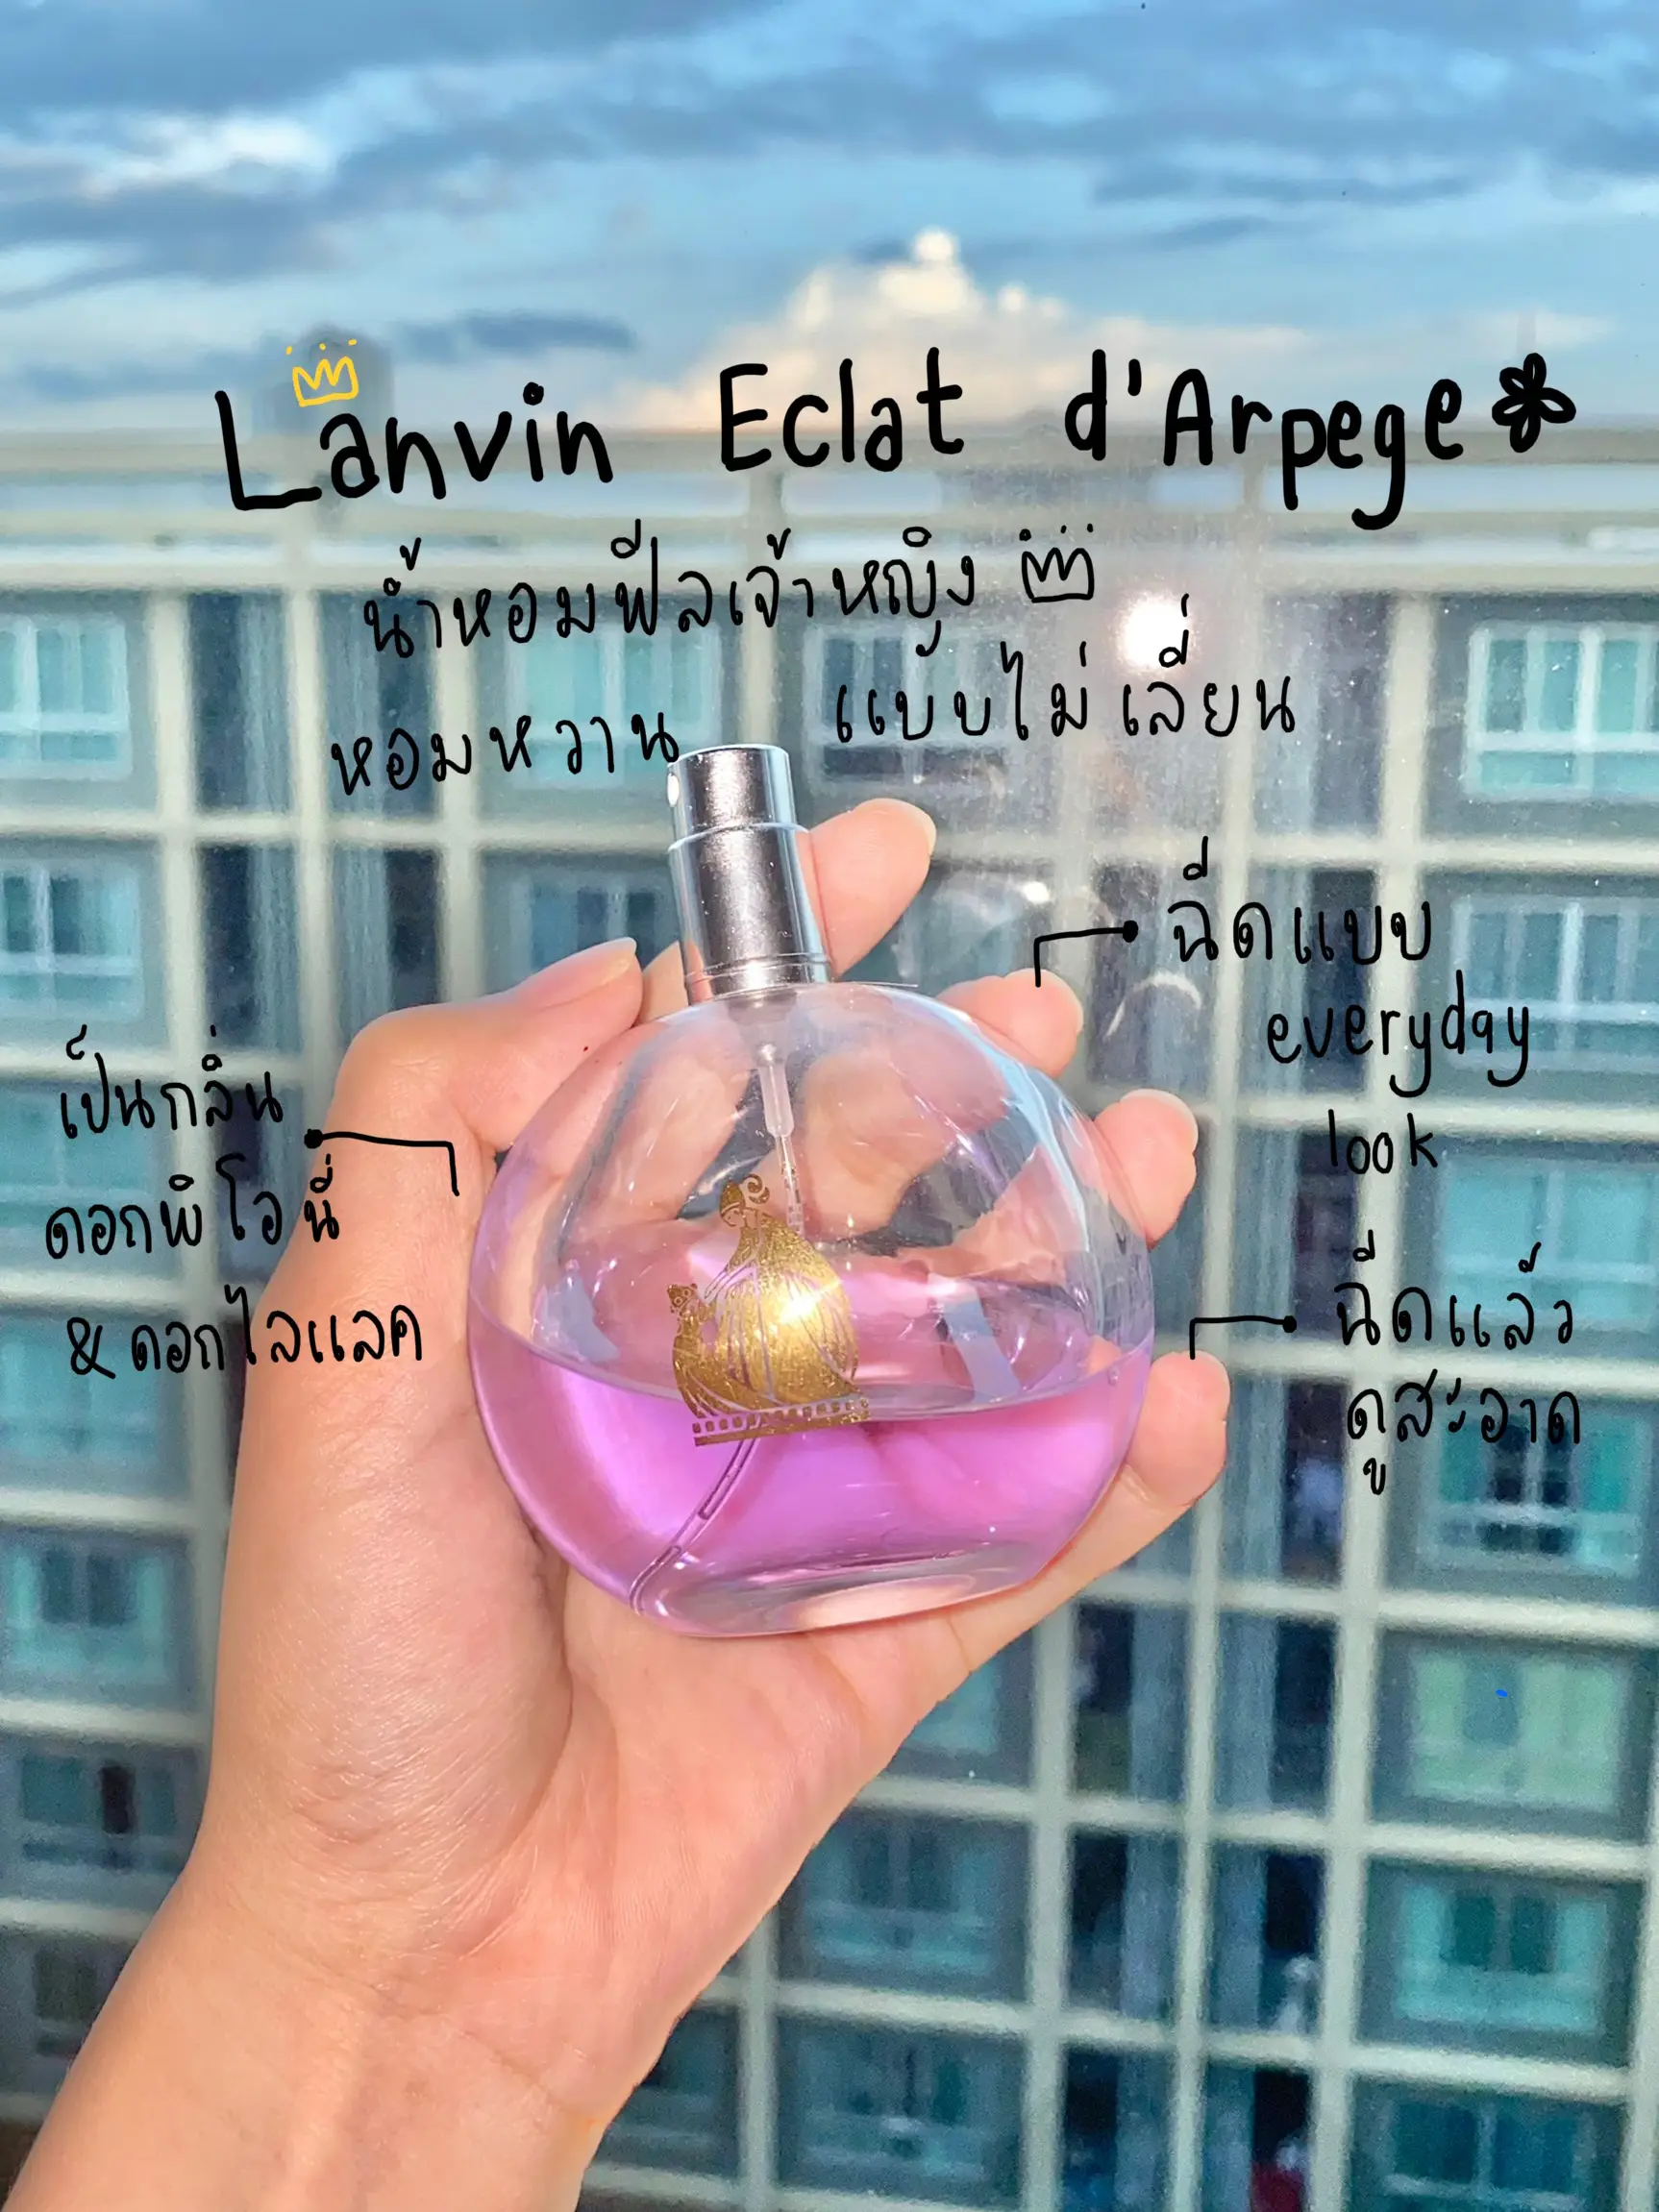 Lanvin Eclat D' Arpege Fake vs. Authentic 